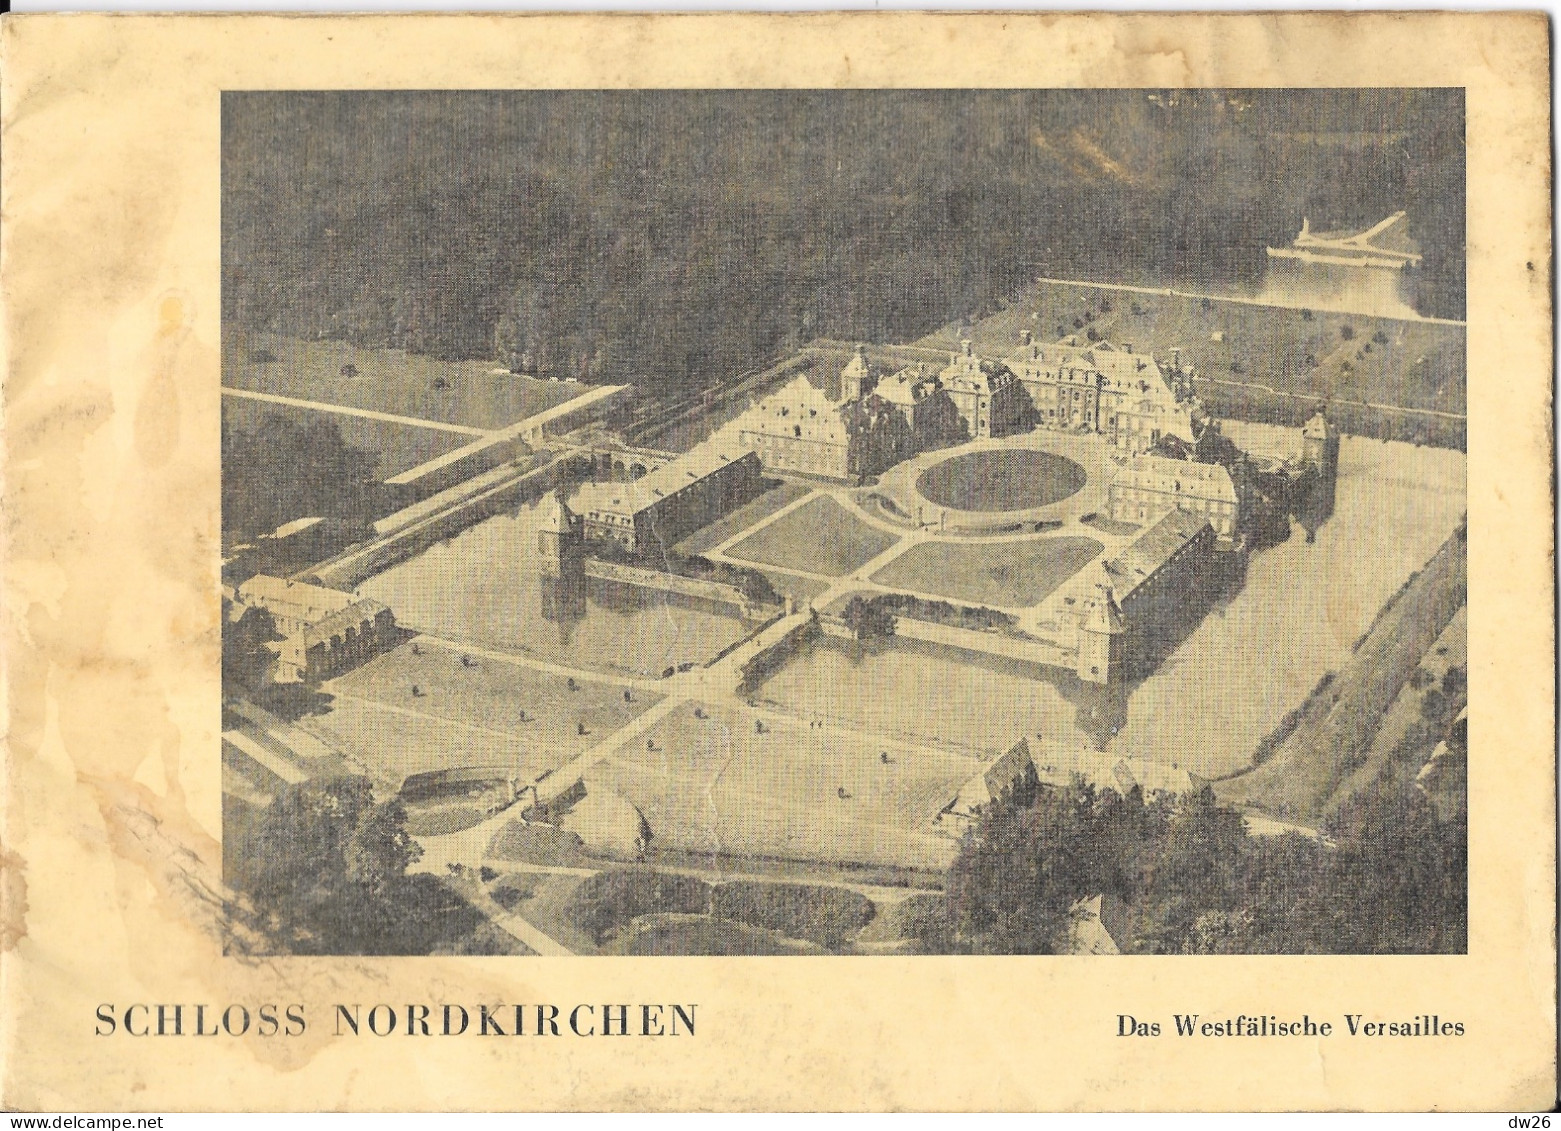 Dépliant Touristique: Schloss Nordkirchen (Das Westfälische Versailles) Le Versailles Allemand, Livret 20 Pages - Cuadernillos Turísticos